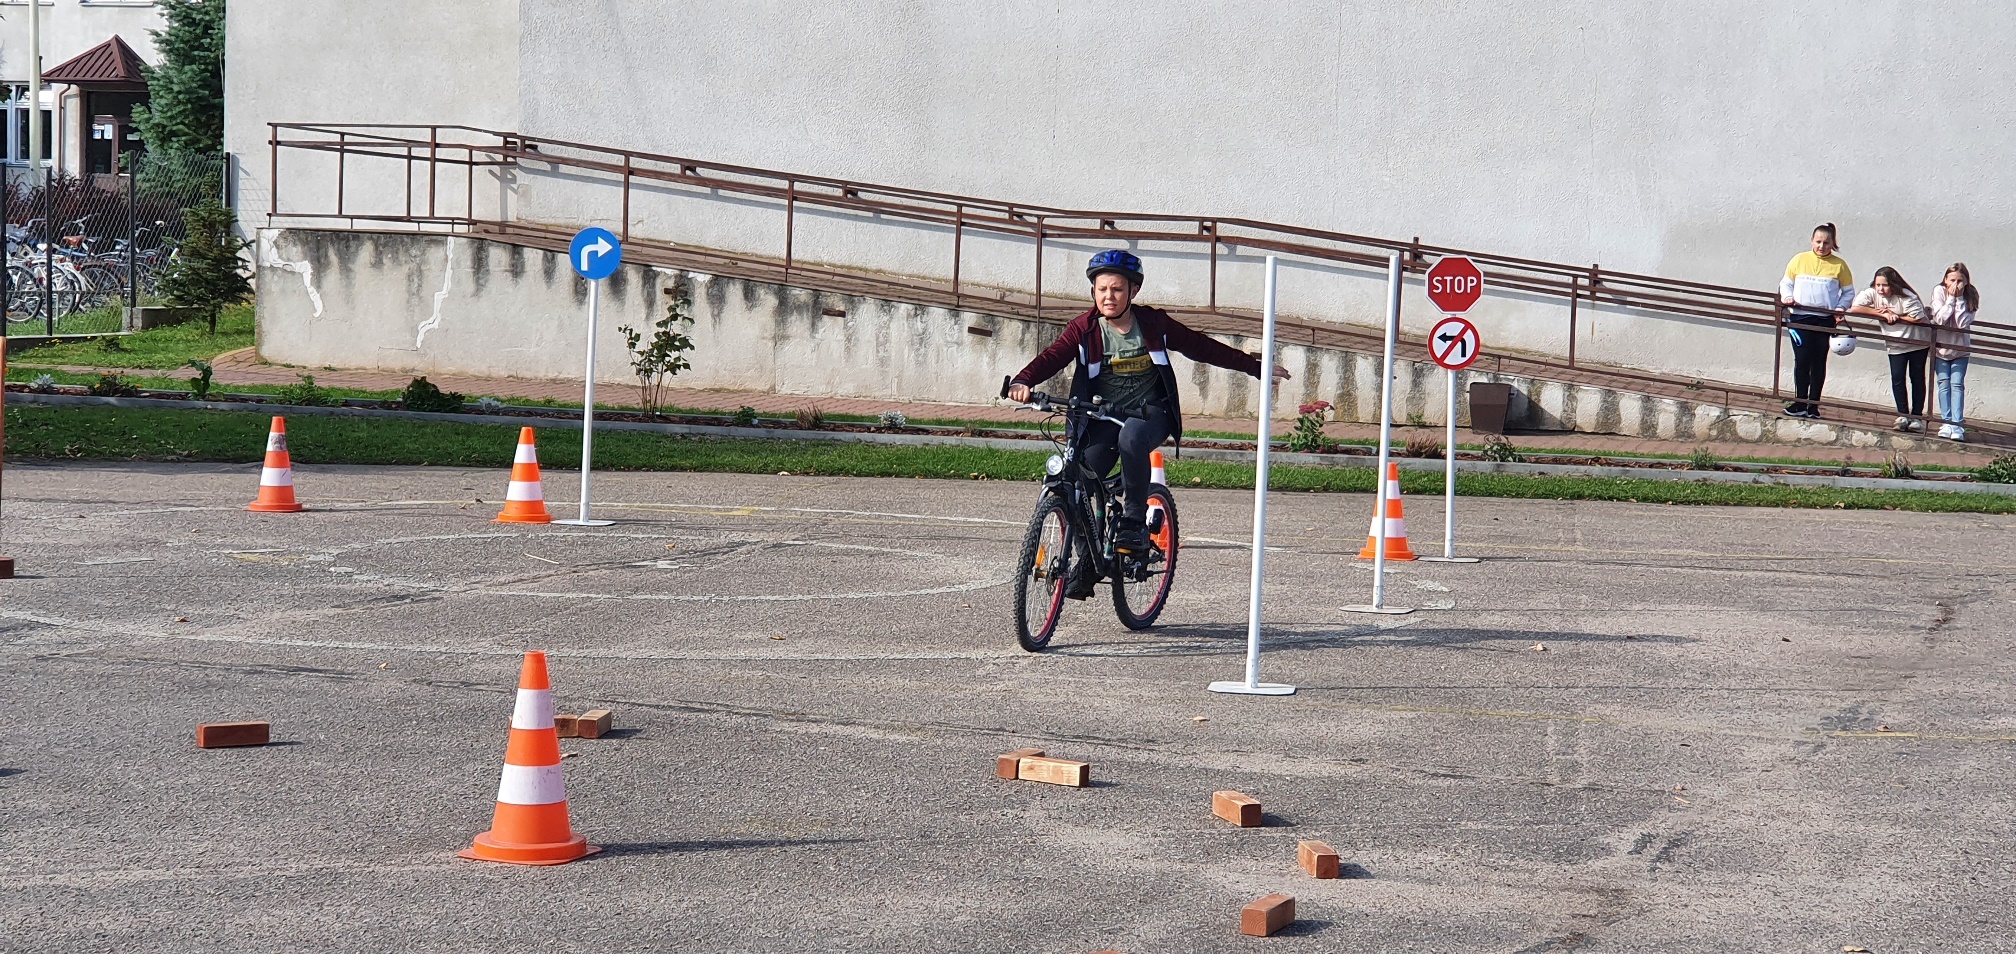 Chłopiec kasku jedzie rowerem po placu, gdzie trasę jazdy wyznaczają cegły i pachołki